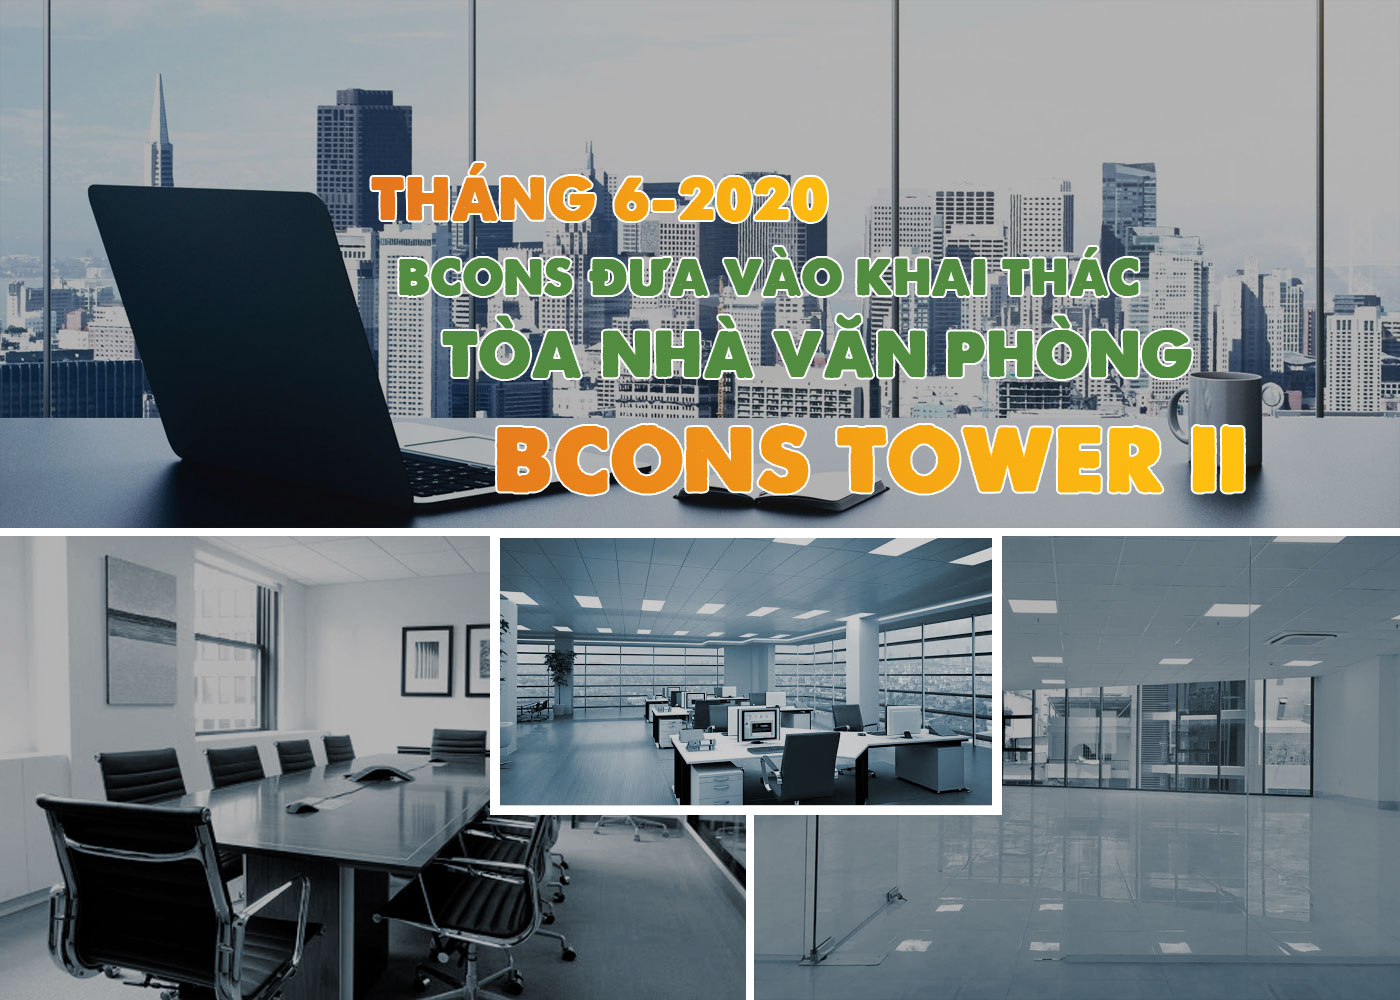 Tháng 6-2020 Bcons đưa vào khai thác tòa nhà văn phòng Bcons Tower II - Ảnh 1